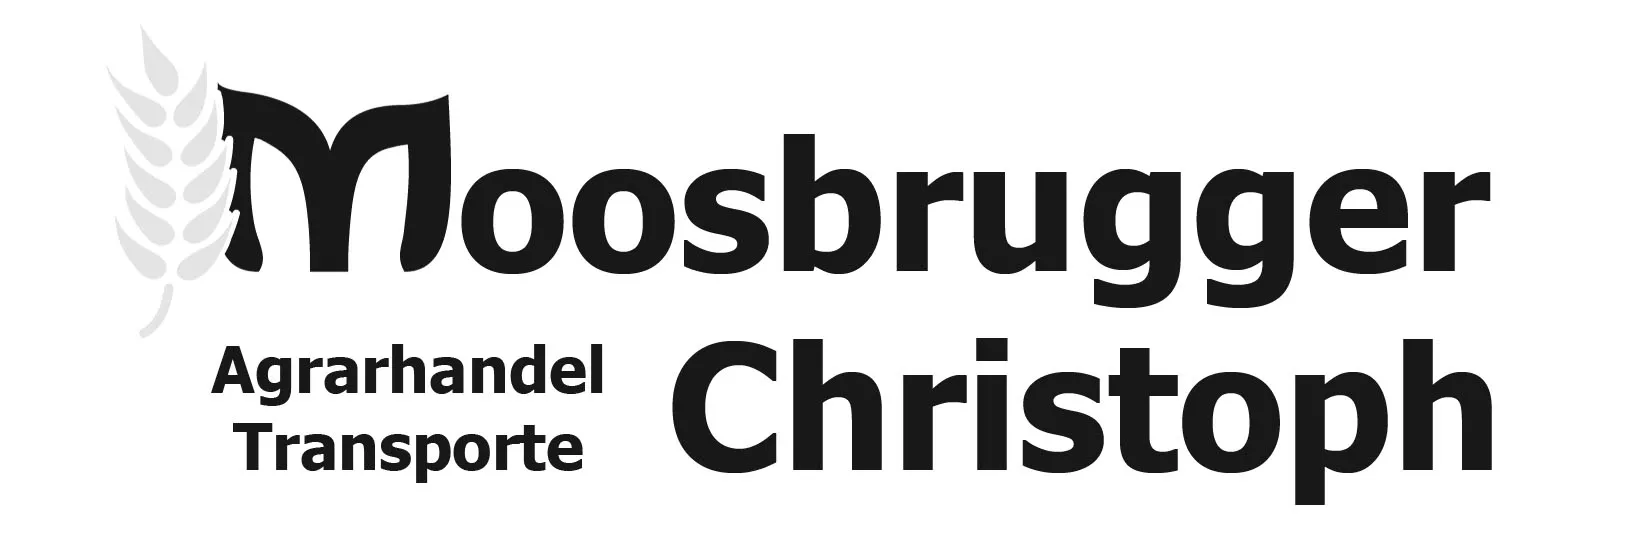 Moosbrugger Christoph, Agrarhandel, Transporte, J&B Igl Web, Igl, Paraguay, Webdesign, Grafik, Worldsoft AG